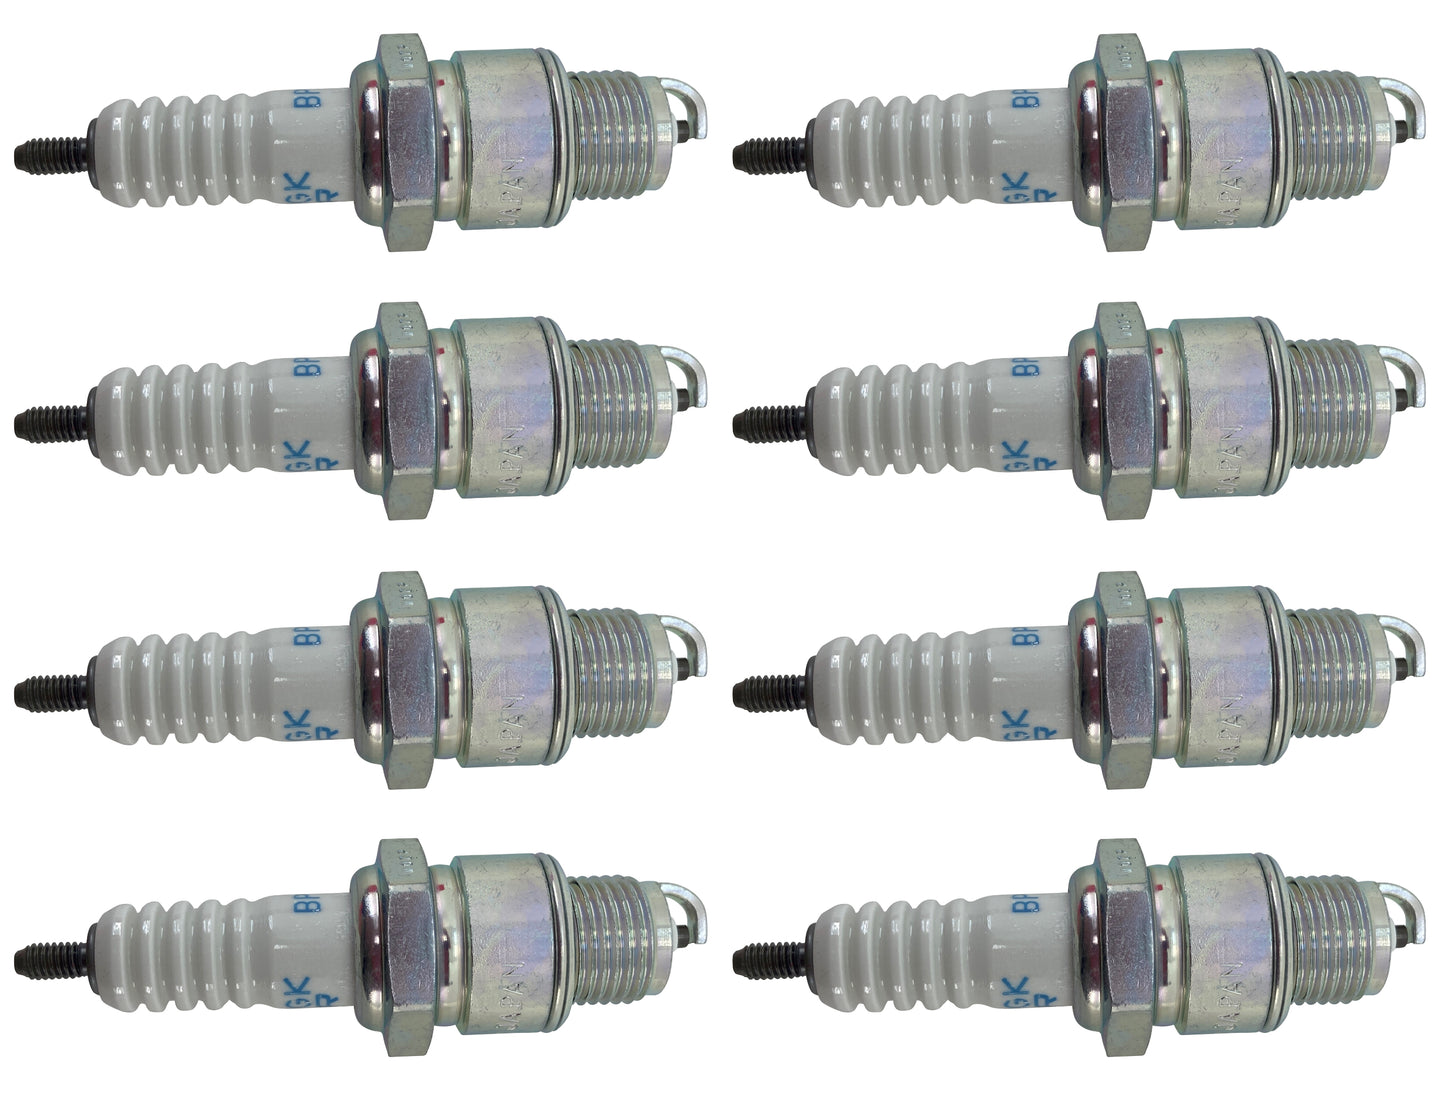 Honda Original Equipment Spark Plug (Pack of 8) - 98076-56717